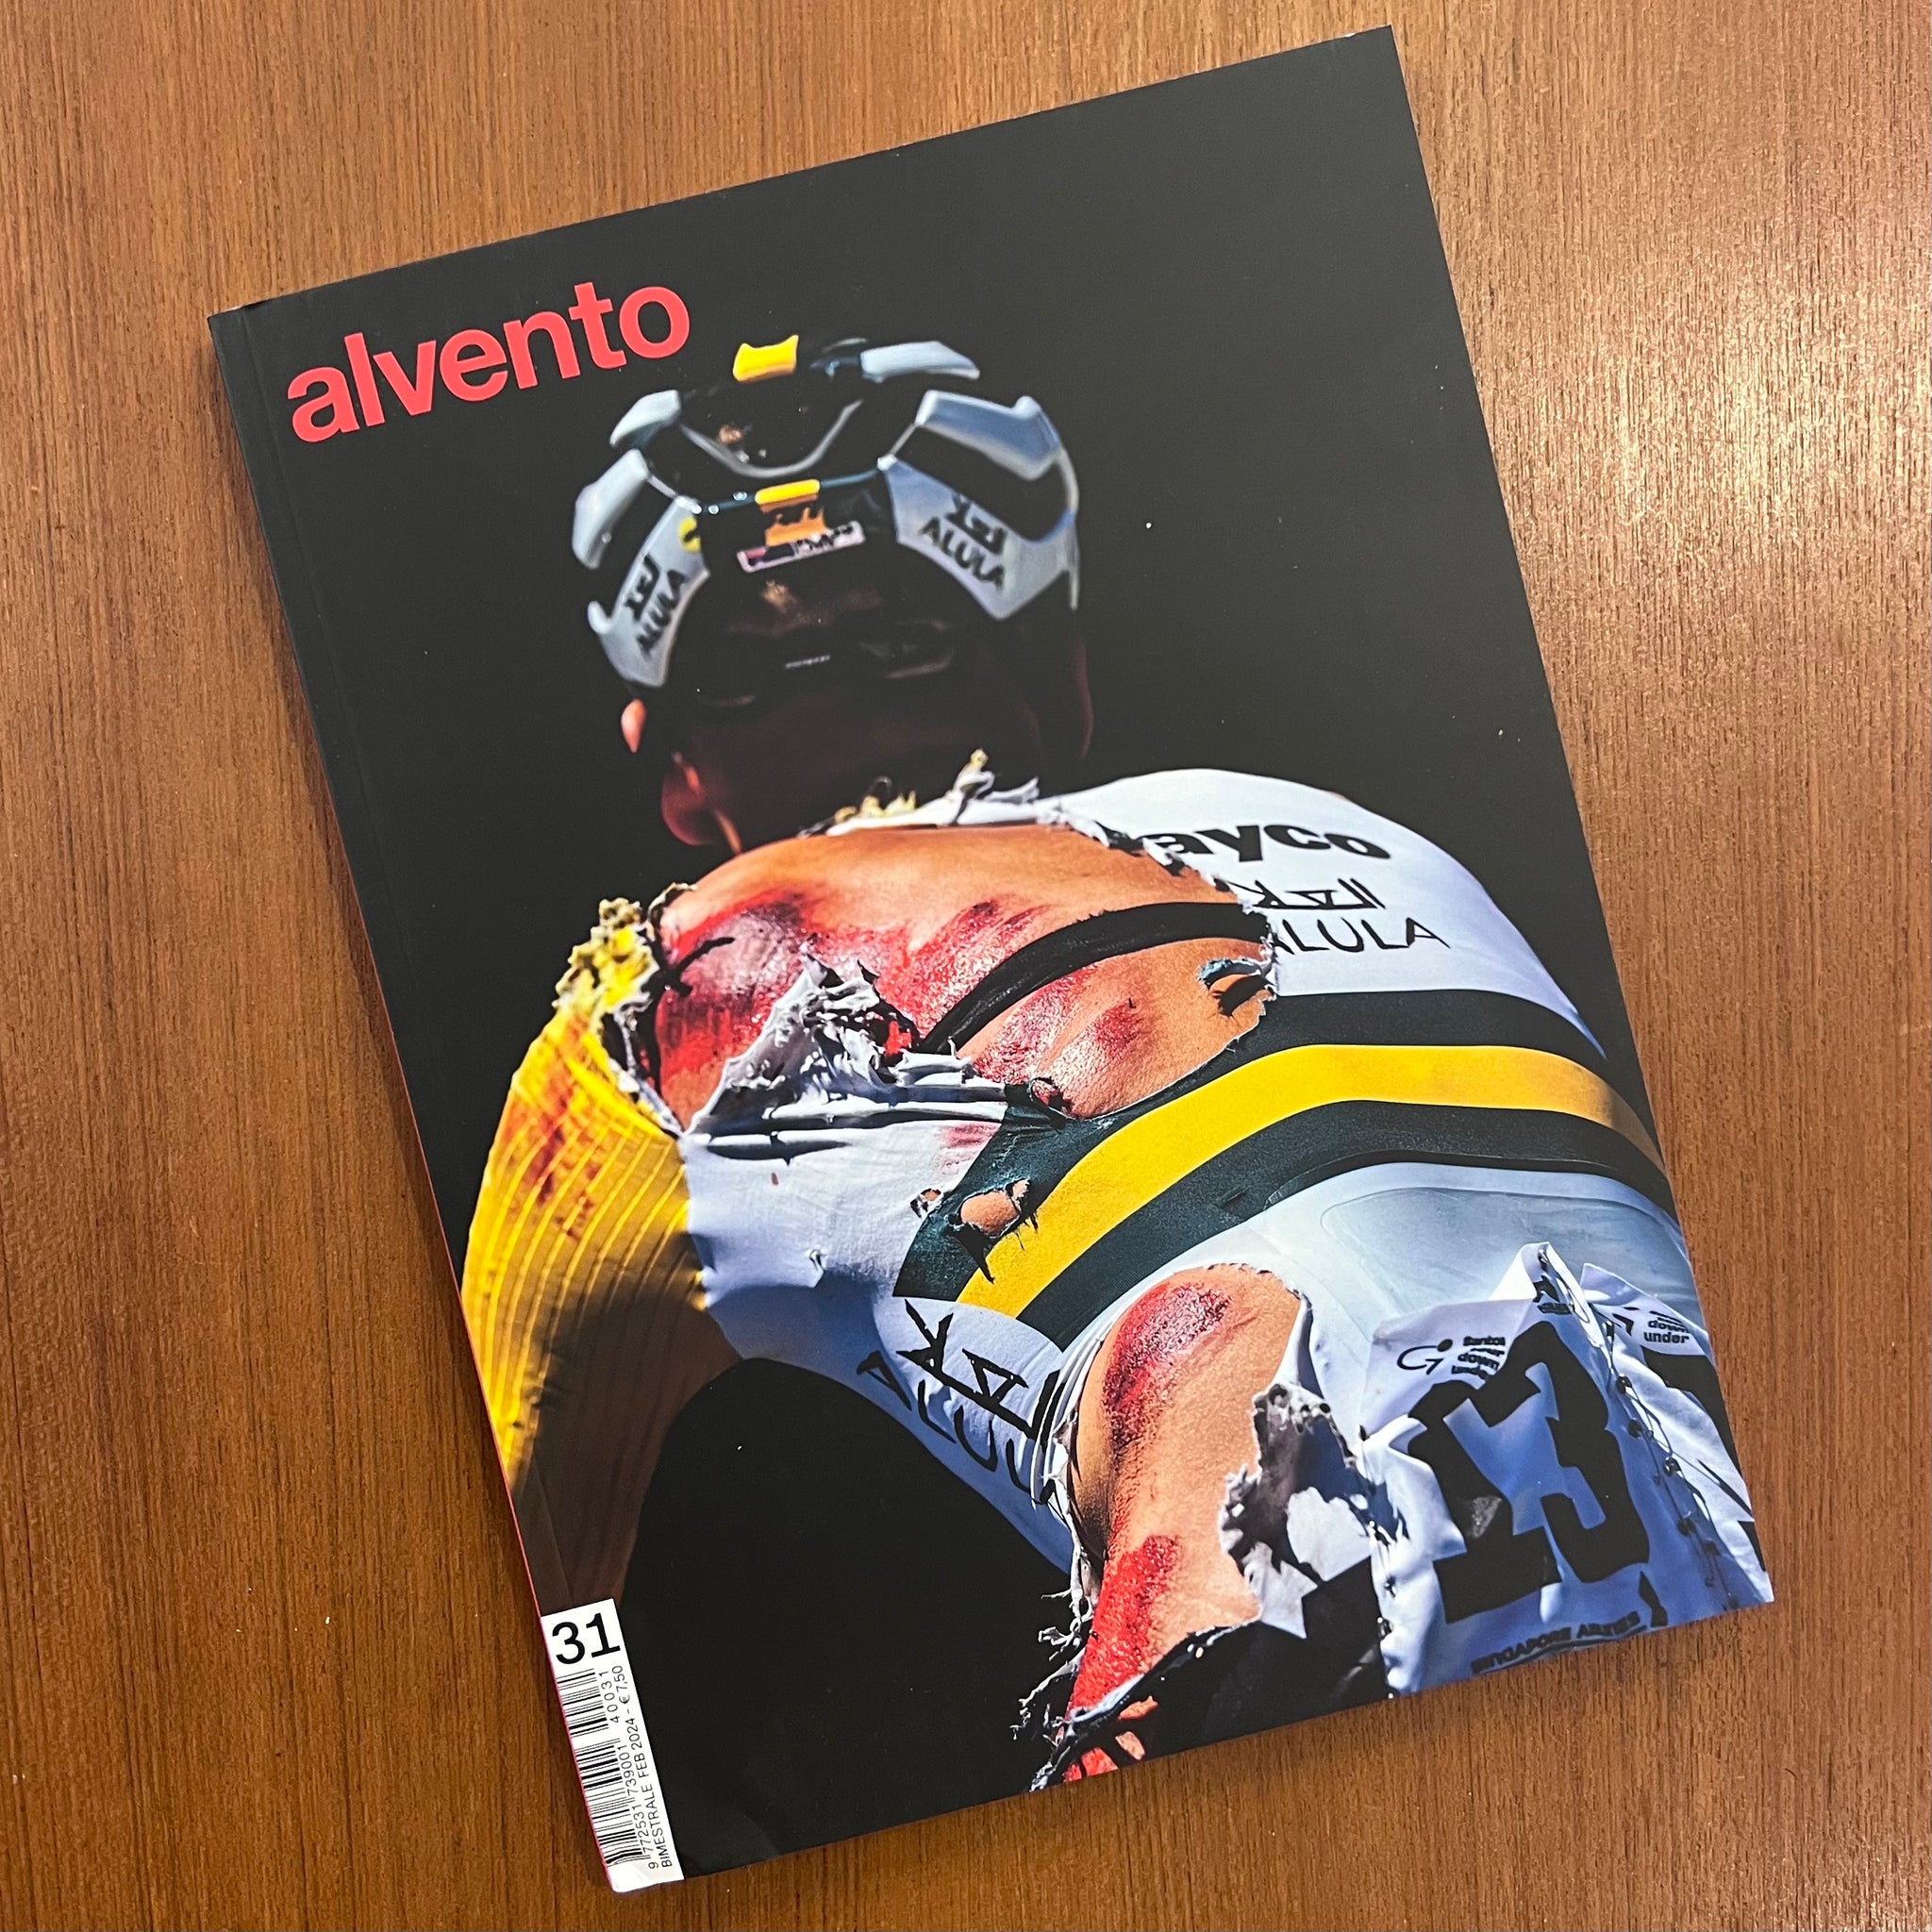 Alvento magazine - 31